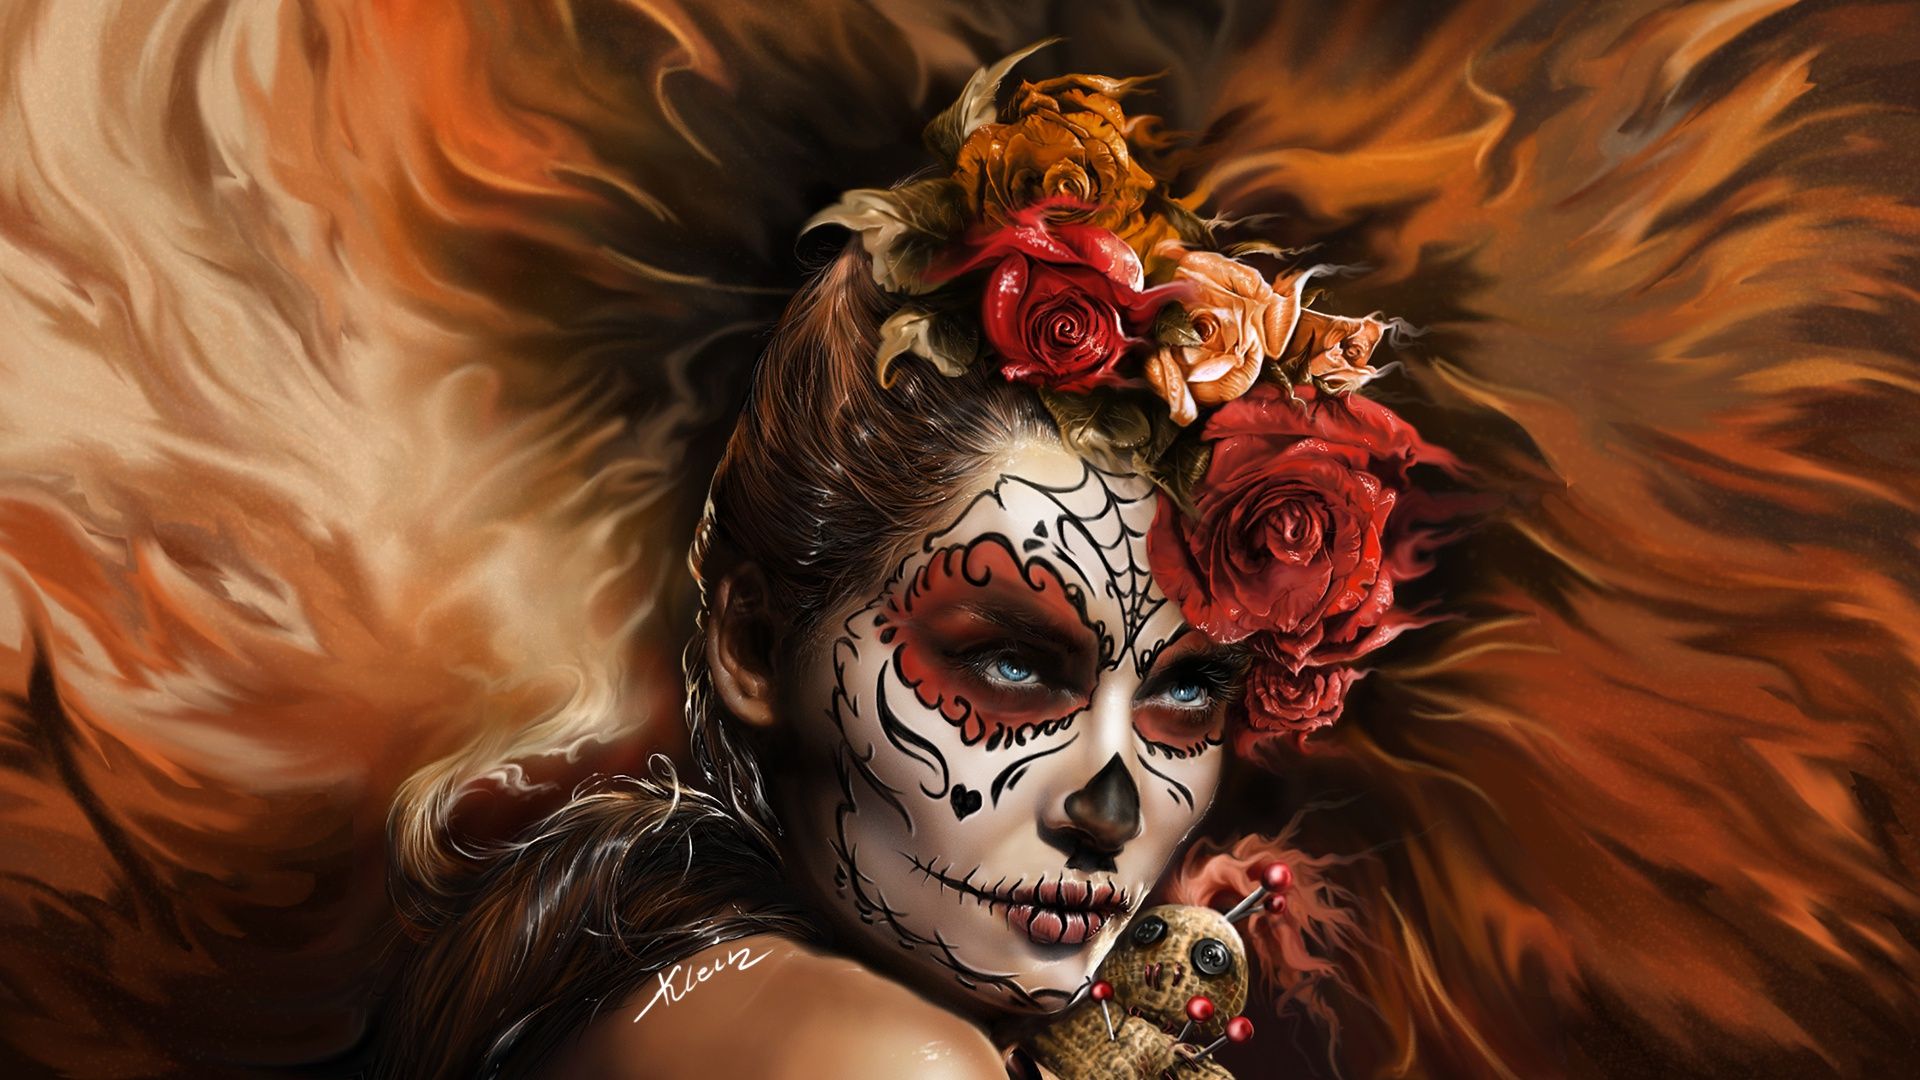 Blue Eyes, Face, Flower, Girl, Rose, Sugar Skull Wallpaper Skull Woman HD Wallpaper